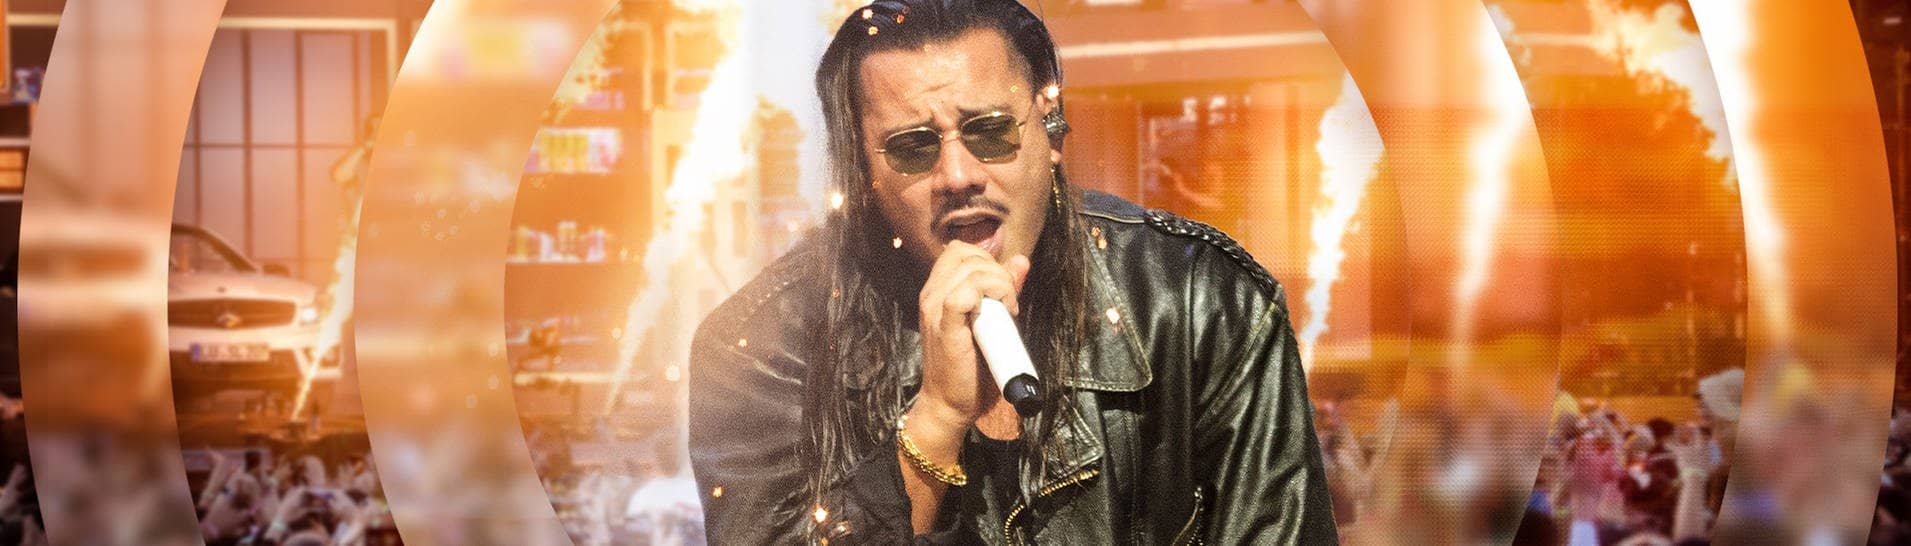 Der Sänger und Rapper Apache 207 bei einem Live-Konzertt